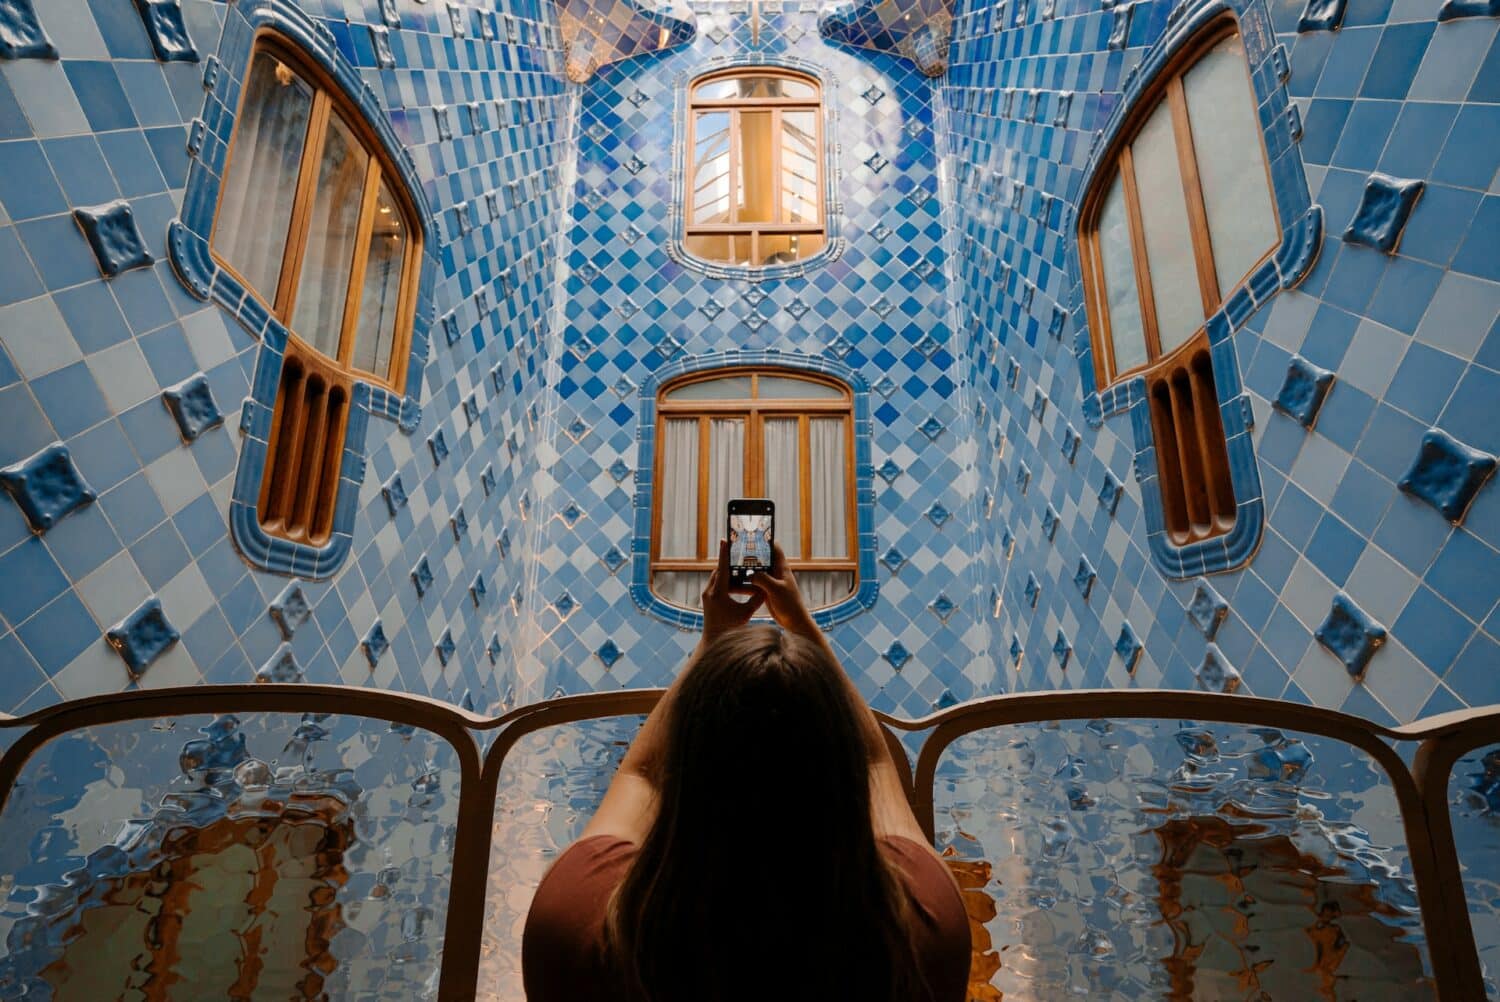 Mulher tirando foto com um celular da parede com azulejos azuis e janelas amarelas, ilustrando post chip celular Barcelona.